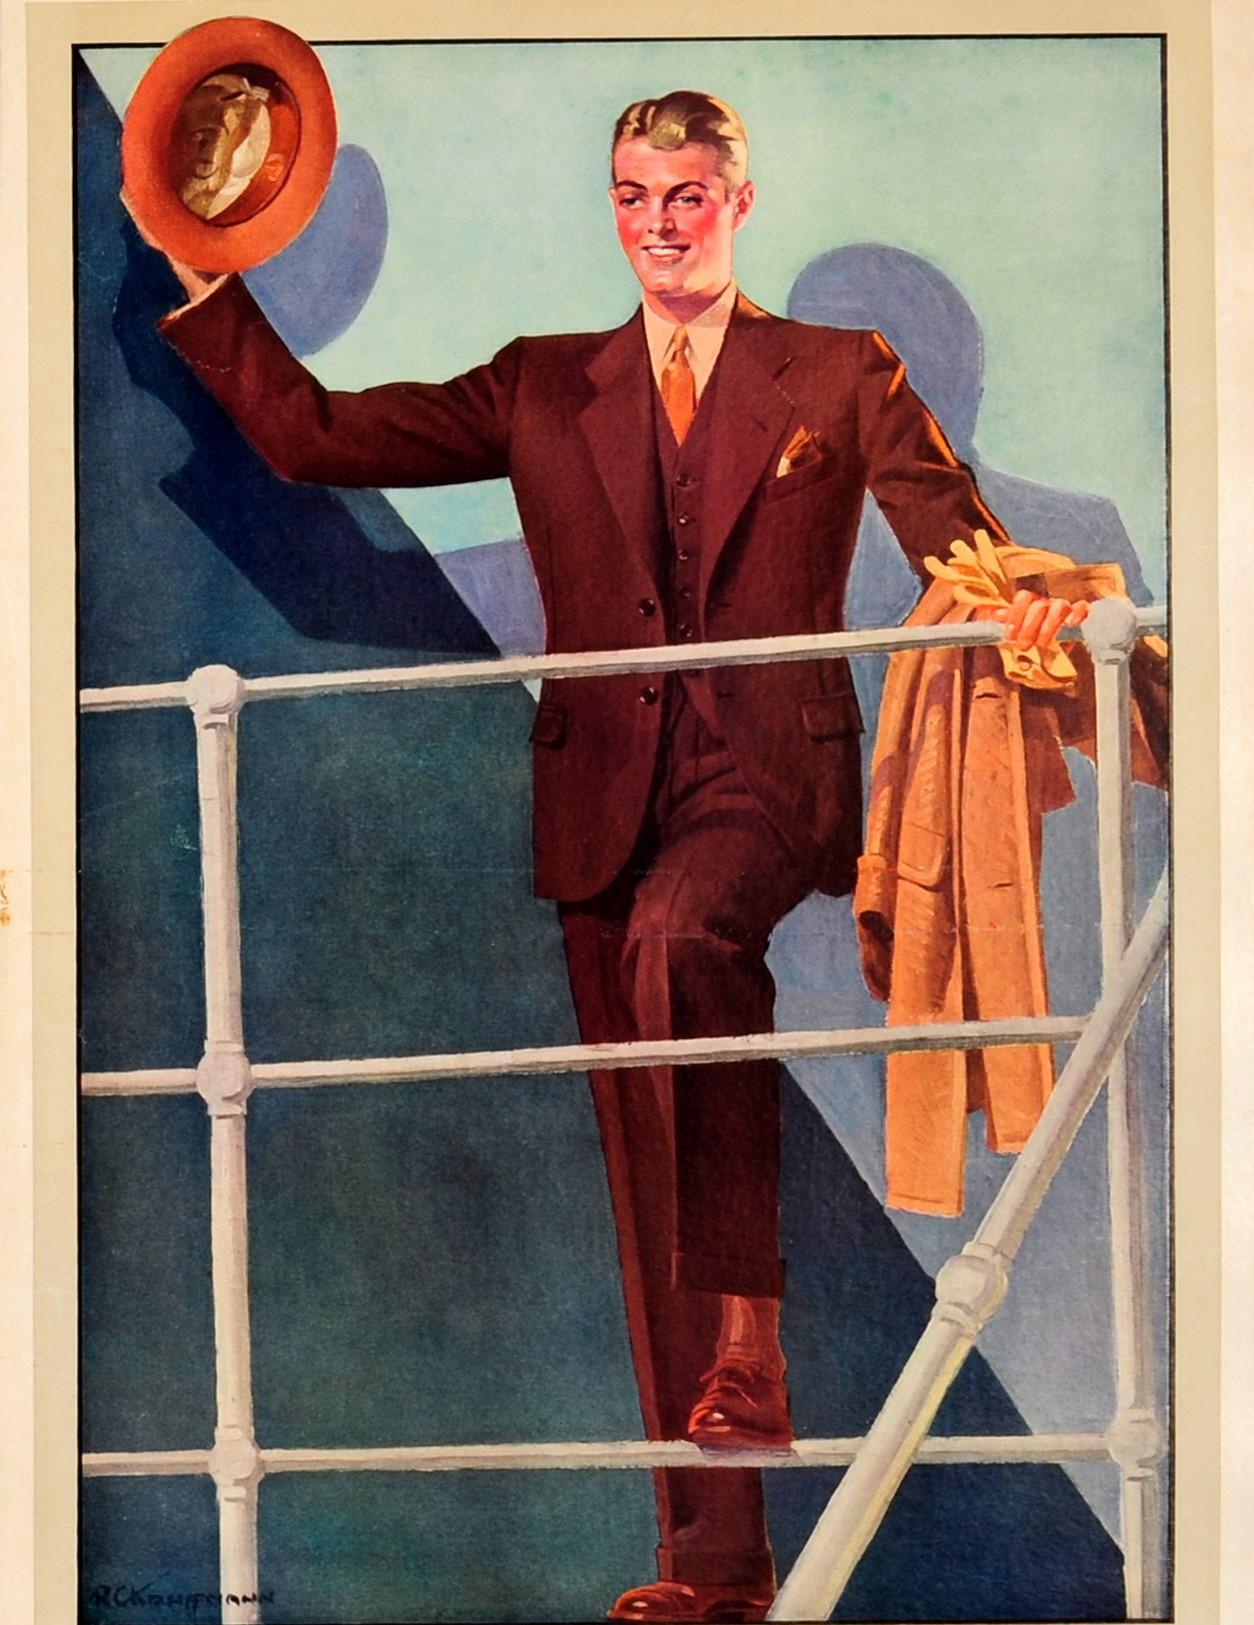 Original-Werbeplakat für Herrenmode der Firma Schloss Bros. & Co. Amerikanisches Kaufhaus mit Sitz in Baltimore und New York, spezialisiert auf Herrenanzüge. Großartige Illustration eines elegant gekleideten jungen Mannes im braunen Anzug mit Weste